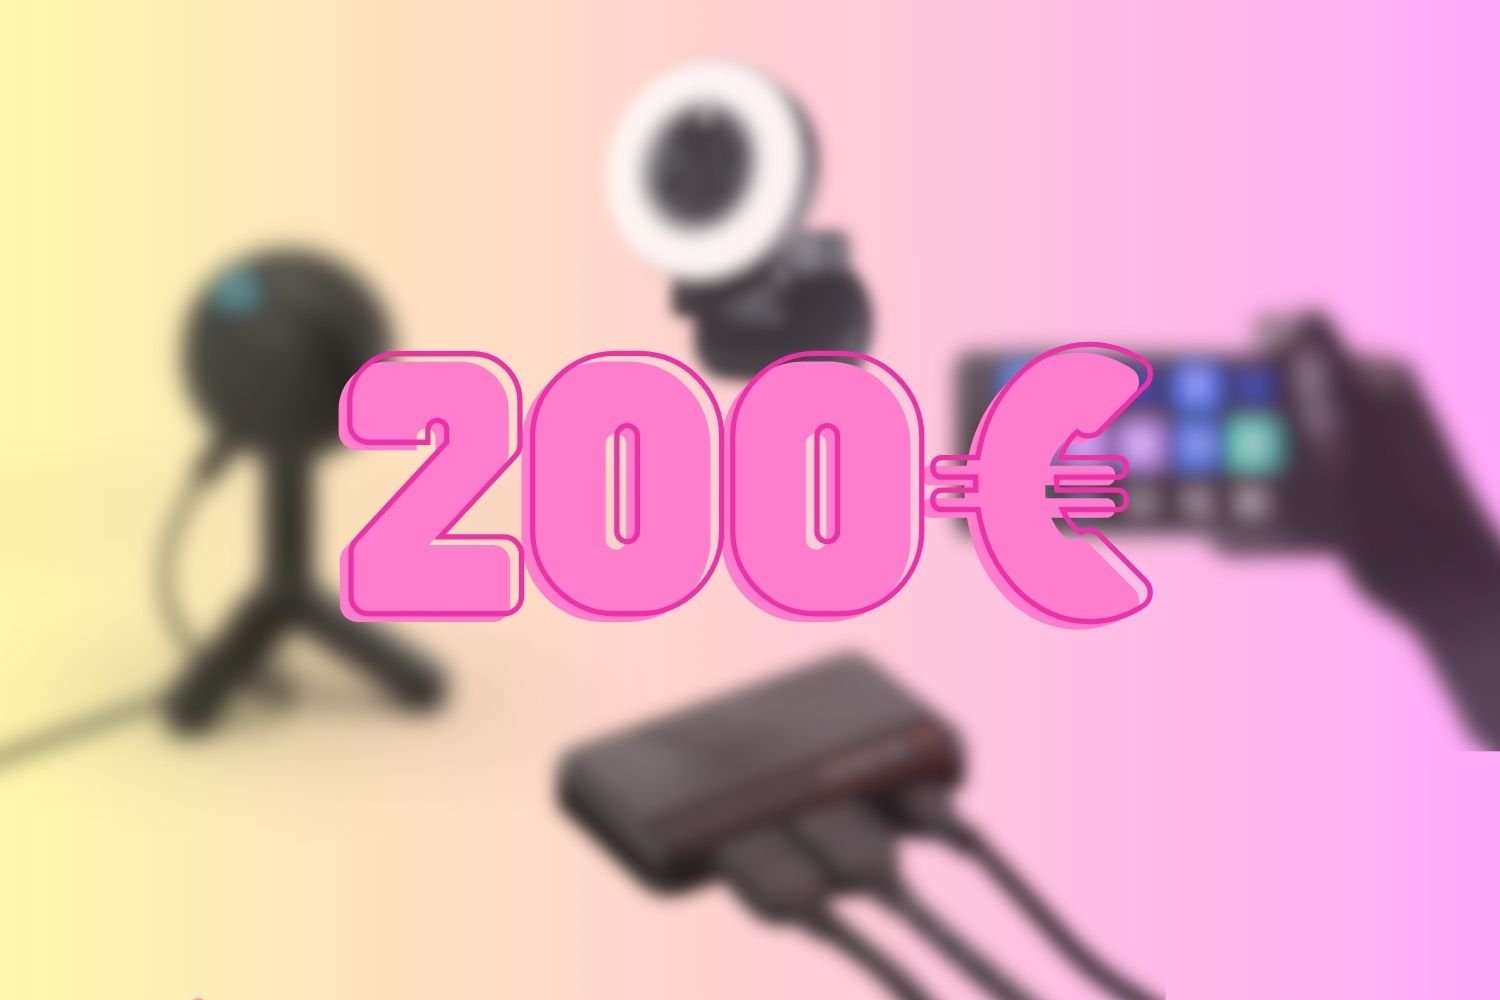 Stream 200 Euros (1)